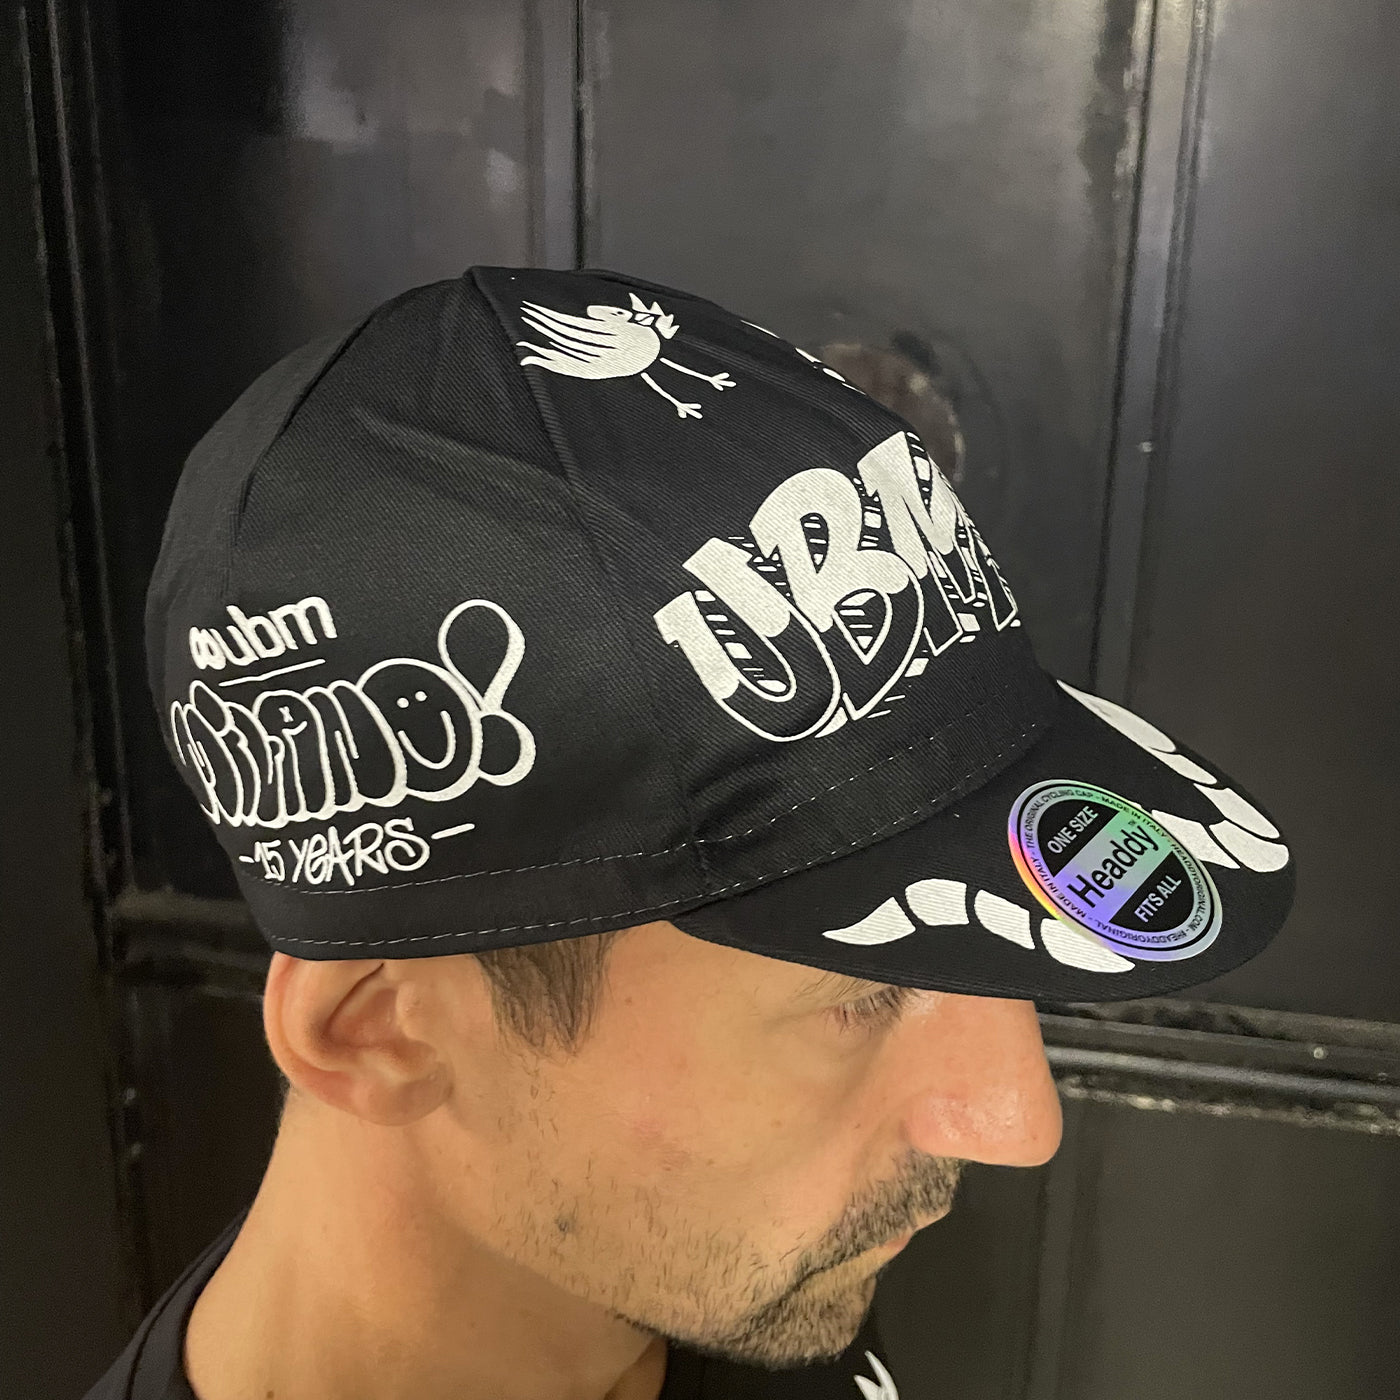 Headdy x UBM 15th anniversary cycling cap - Black